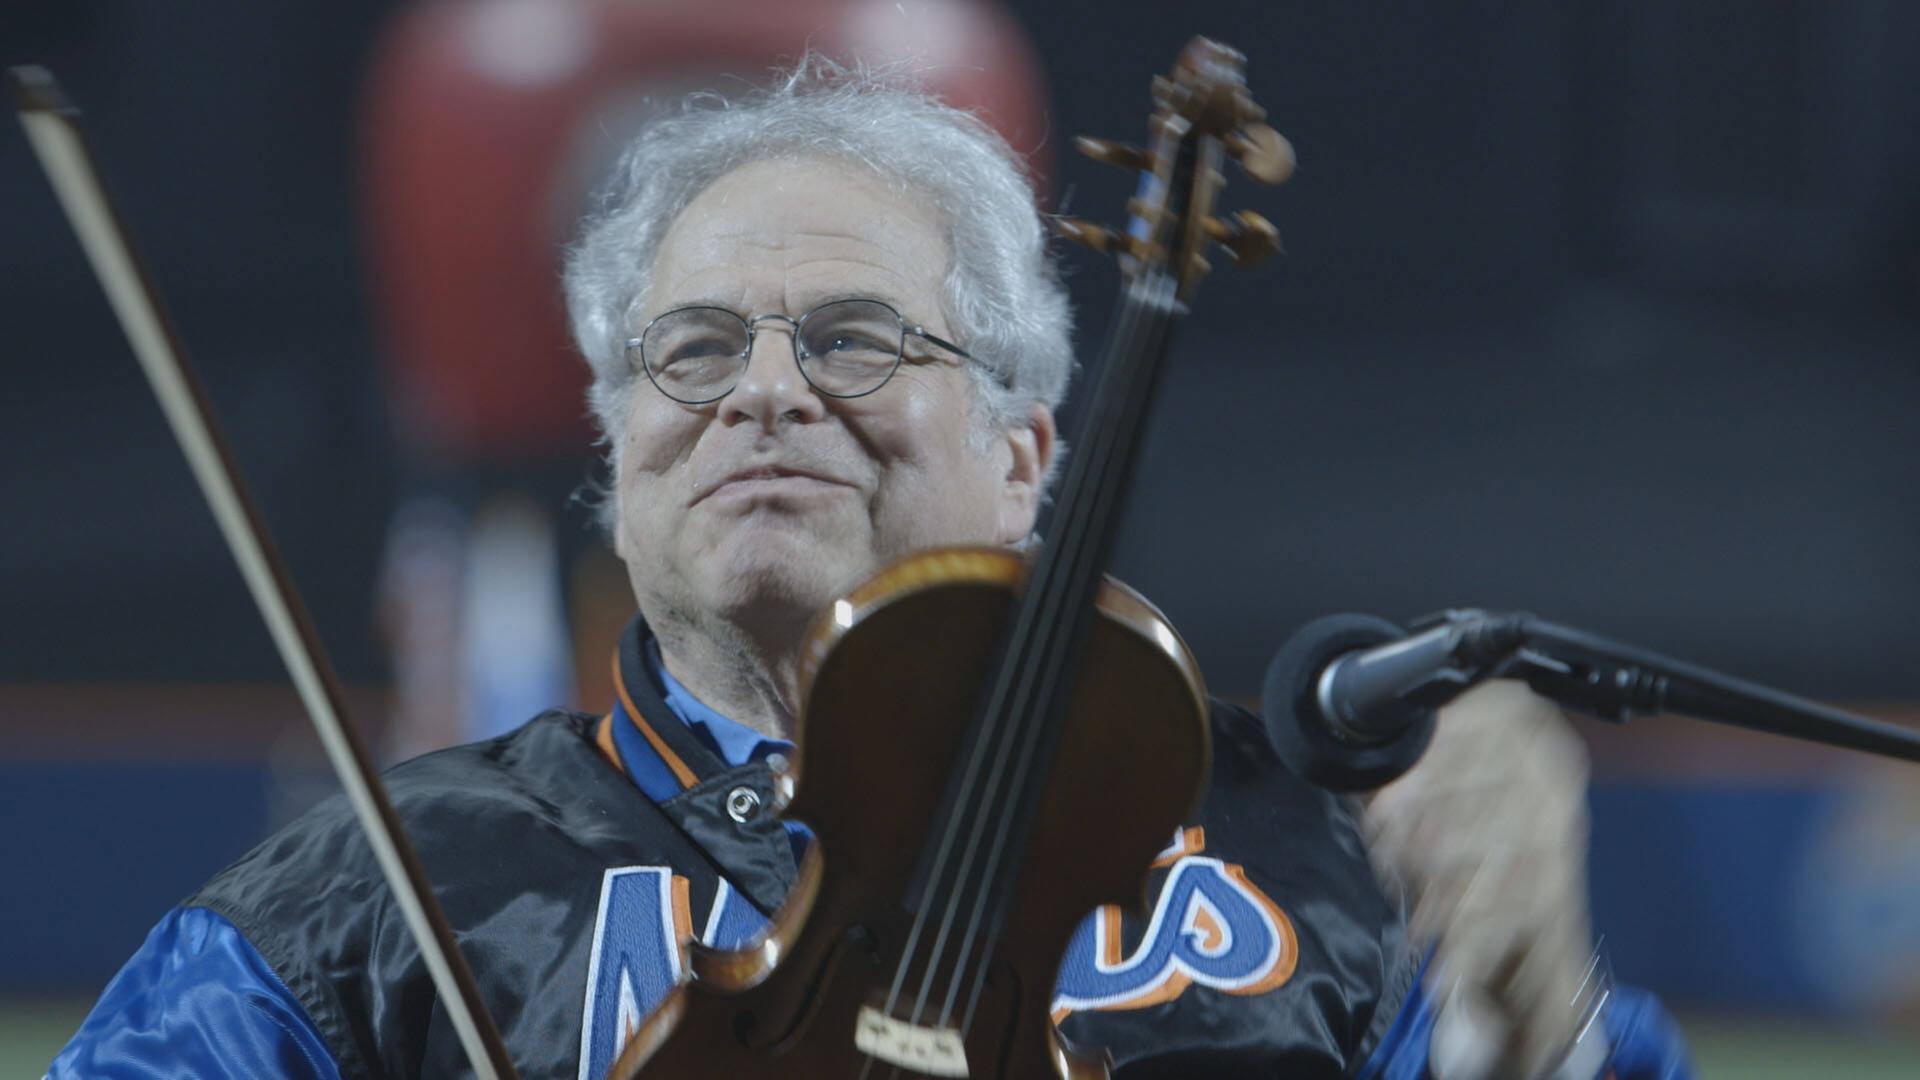 Itzhak Perlman bei seinem Geigenspiel im Stadion.